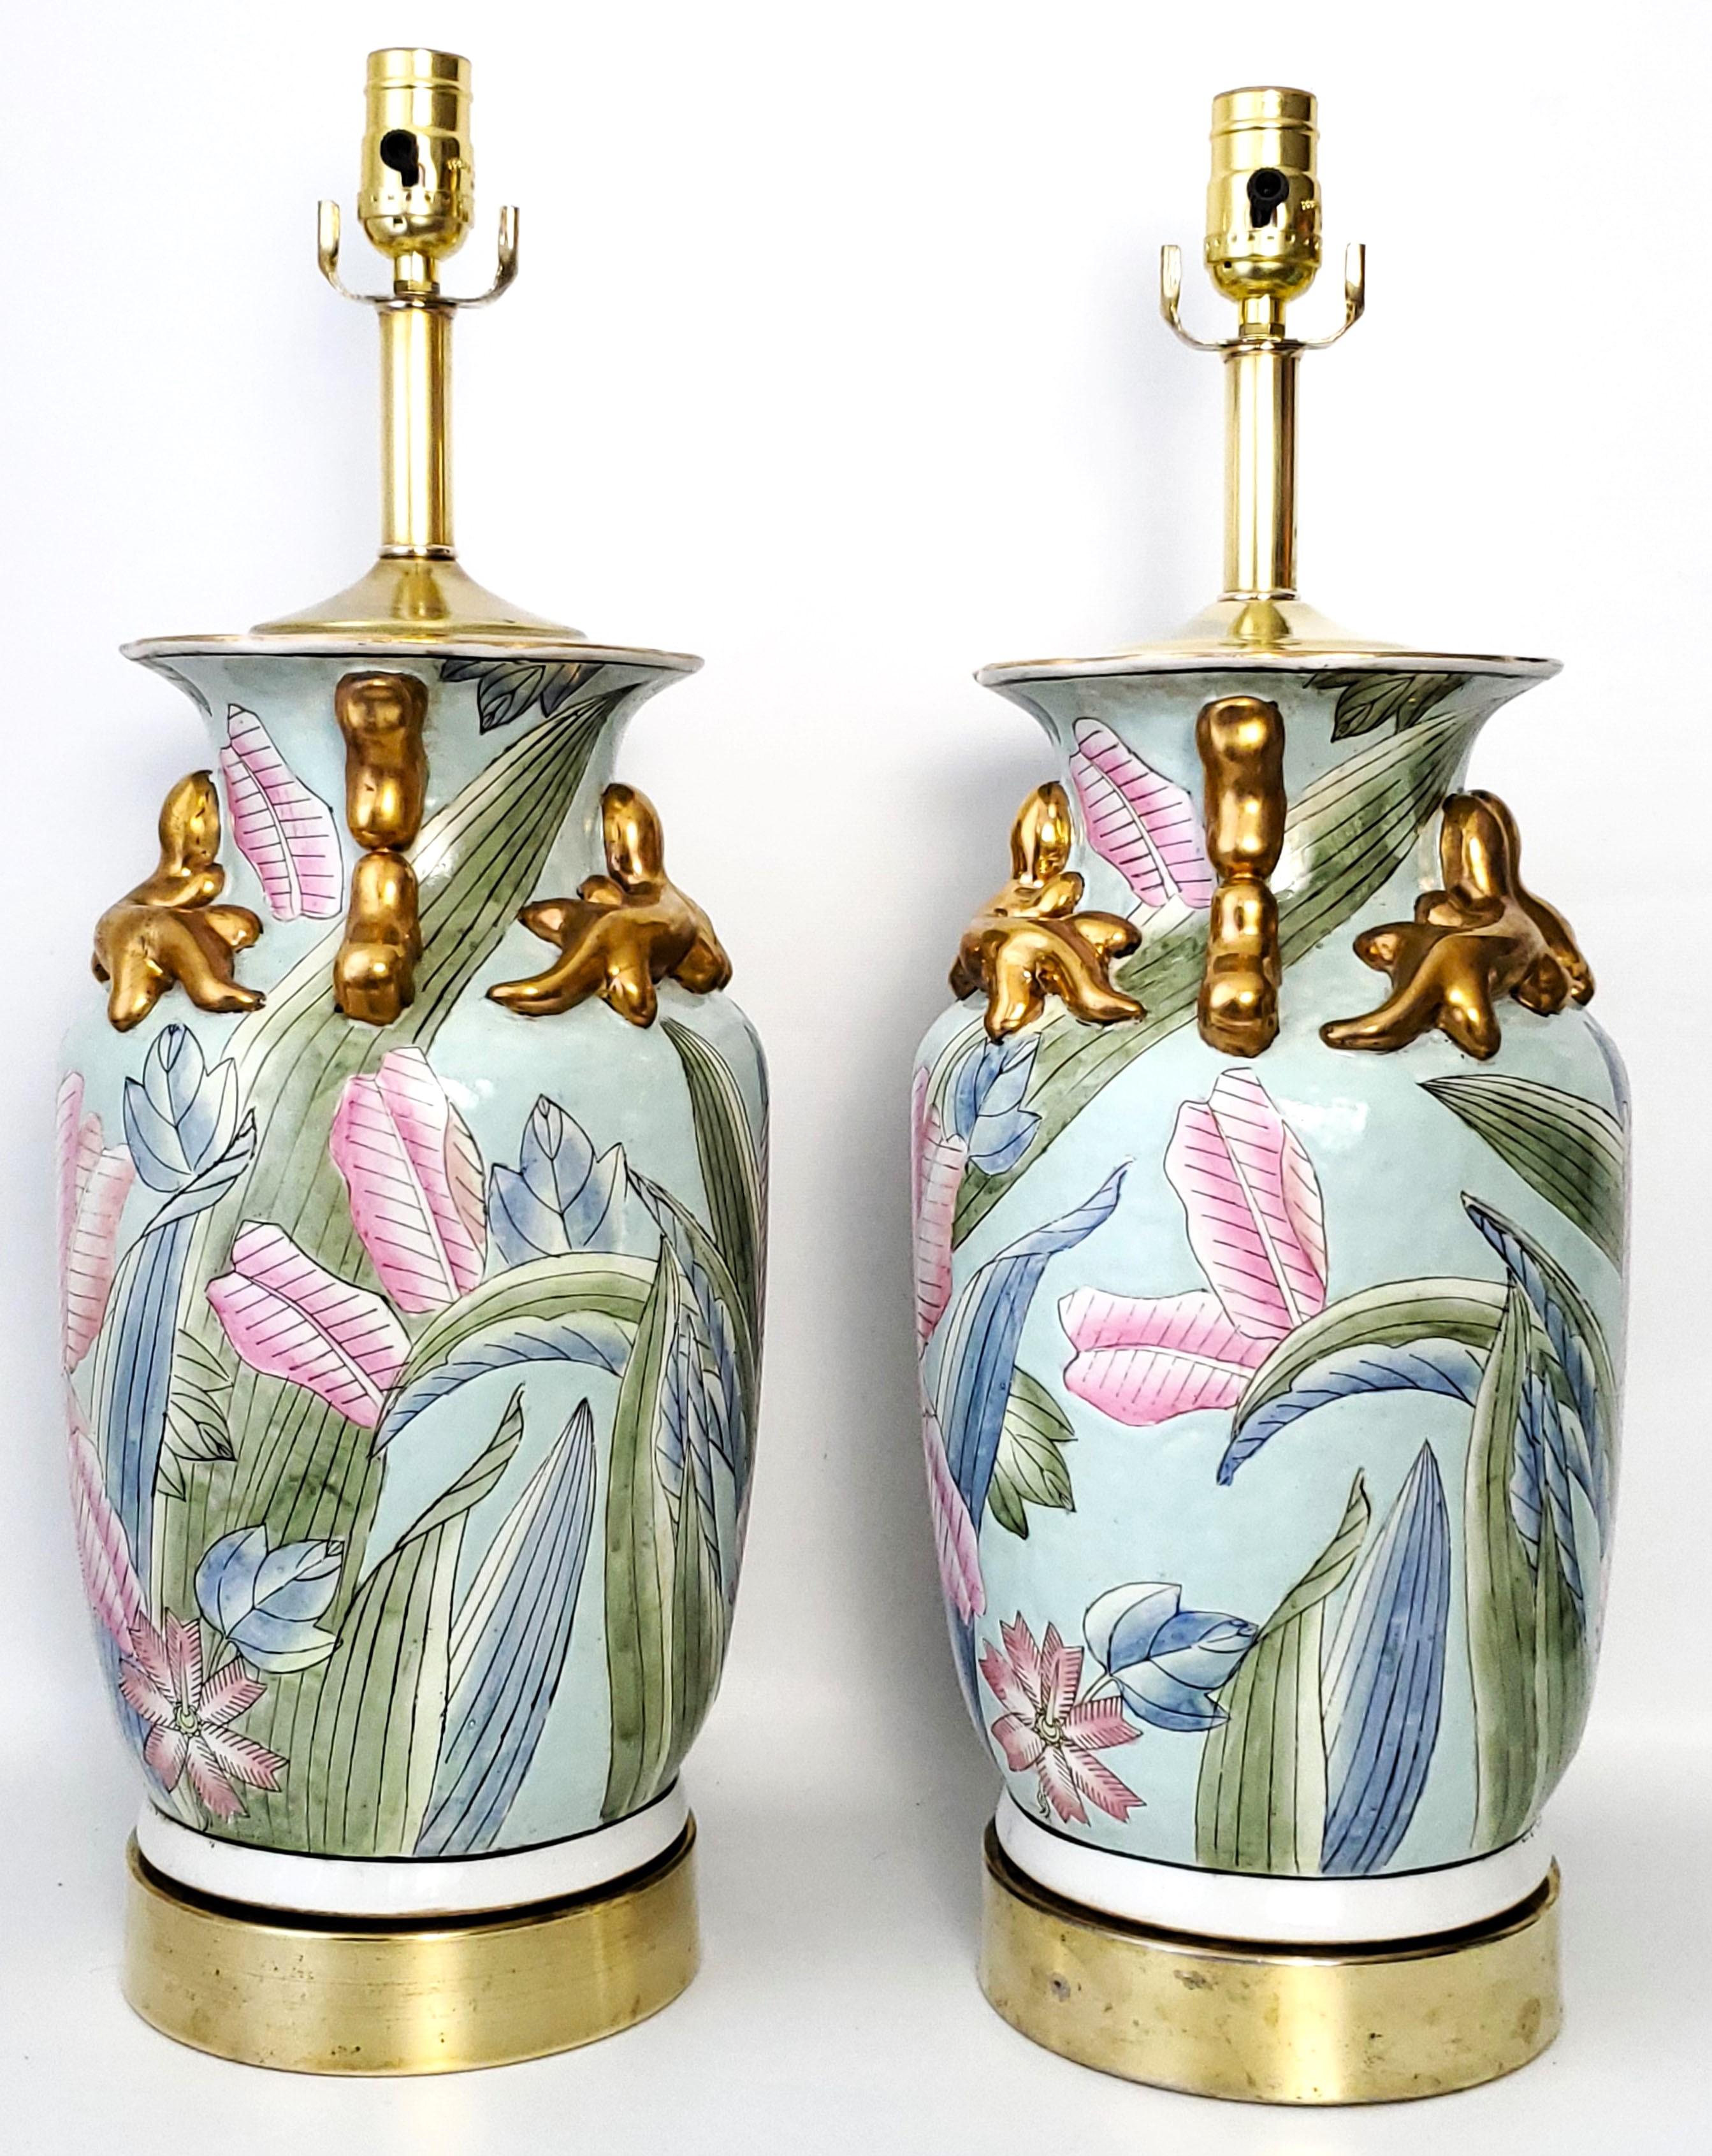 By Vintage - Paire de lampes de table en porcelaine chinoise pastel avec feuilles de tabac, salamandres dorées en trois dimensions et glaçure très texturée, vers le milieu du 20e siècle. Ces lampes étant peintes individuellement à la main, leur